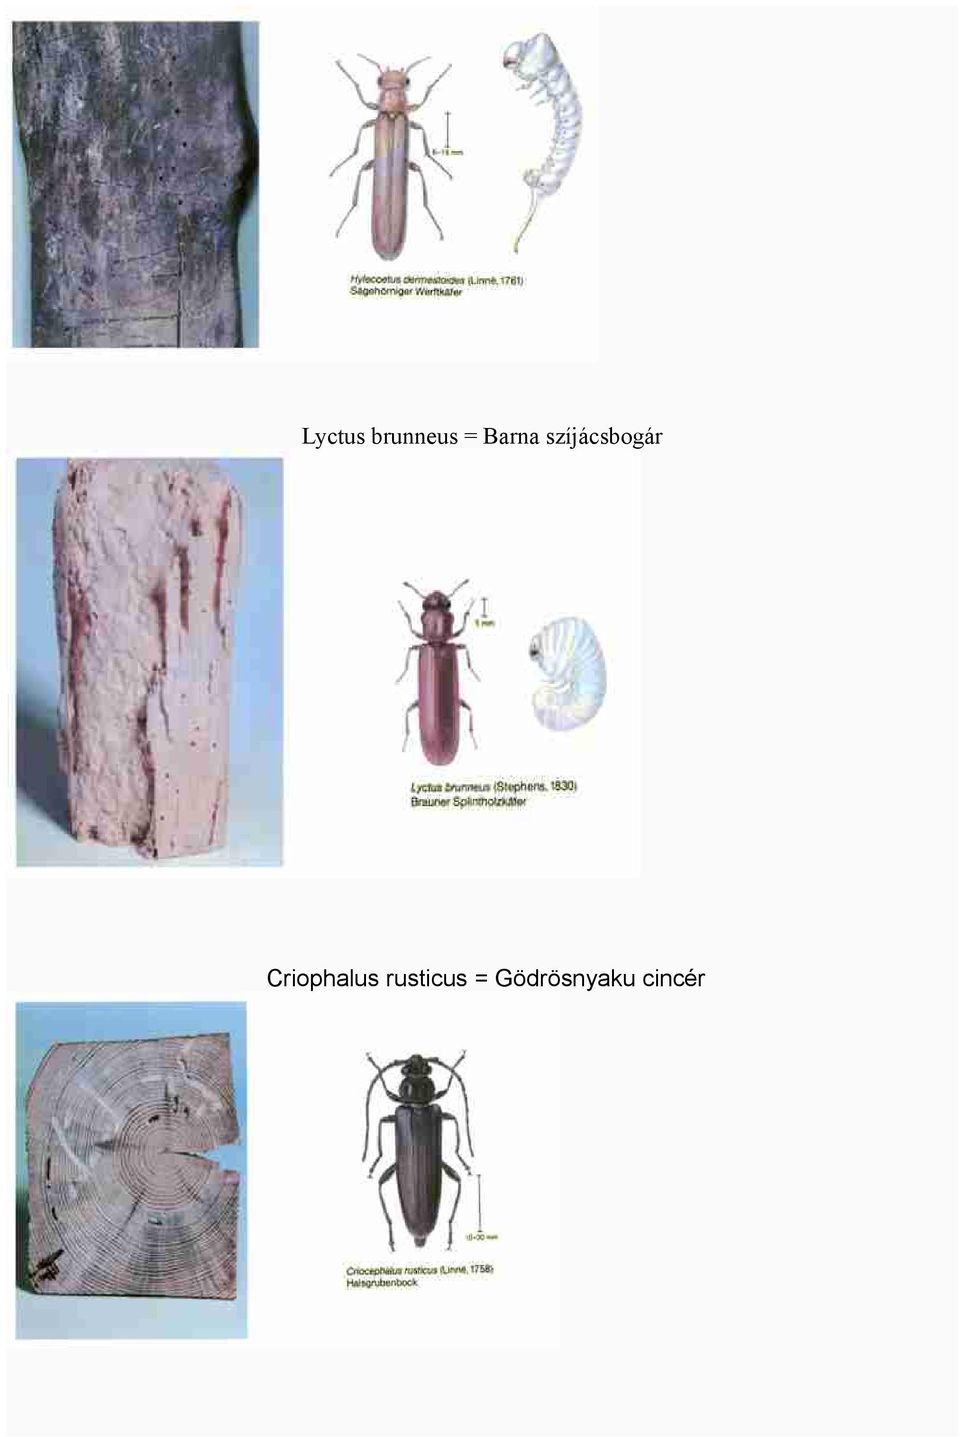 Criophalus rusticus